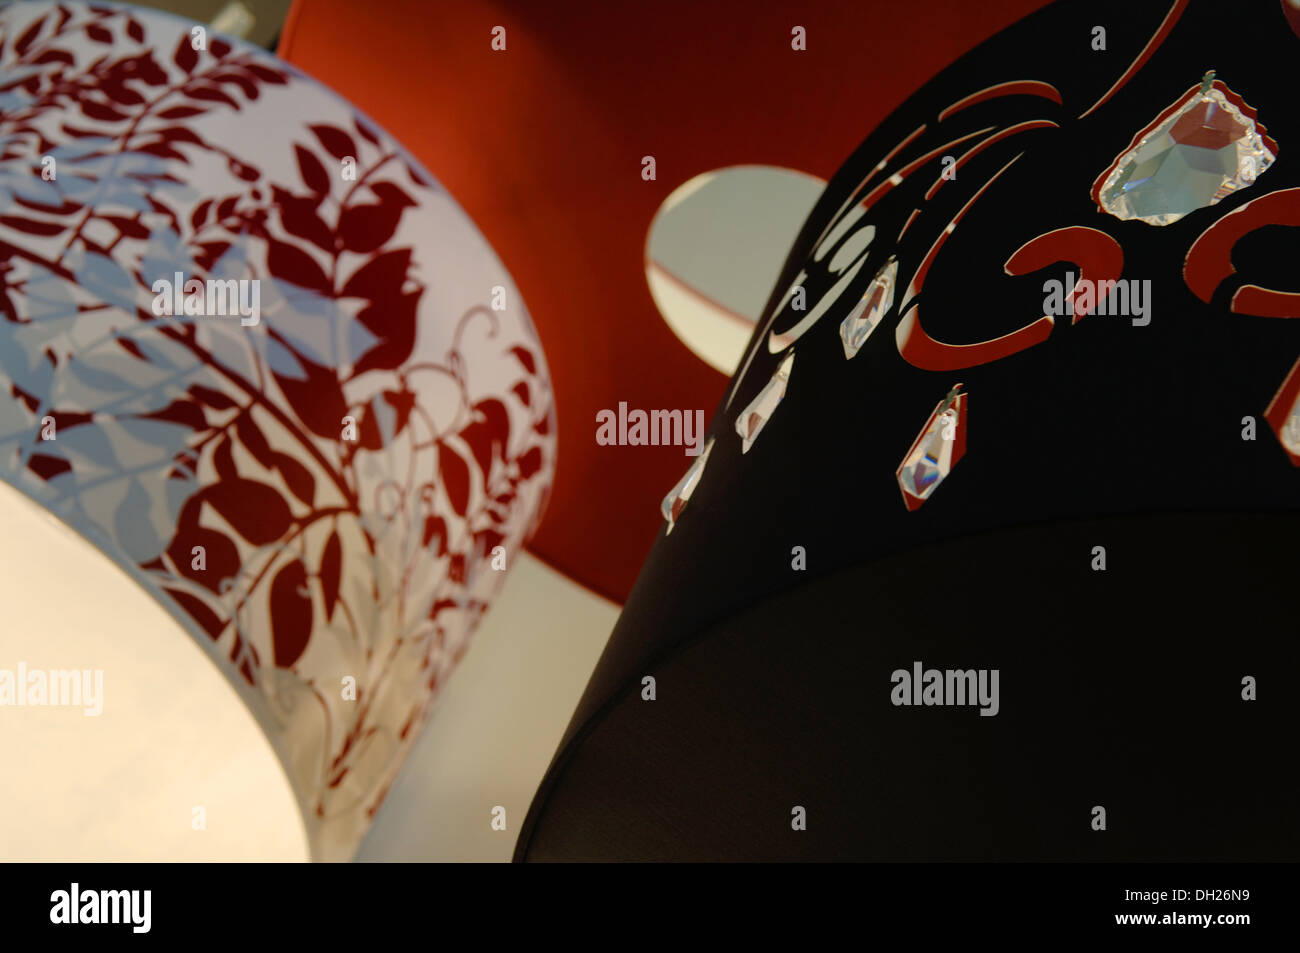 Lampenschirme von verschiedenen Designs in verschiedenen Farben, schwarz, rot, weiß. Stockfoto